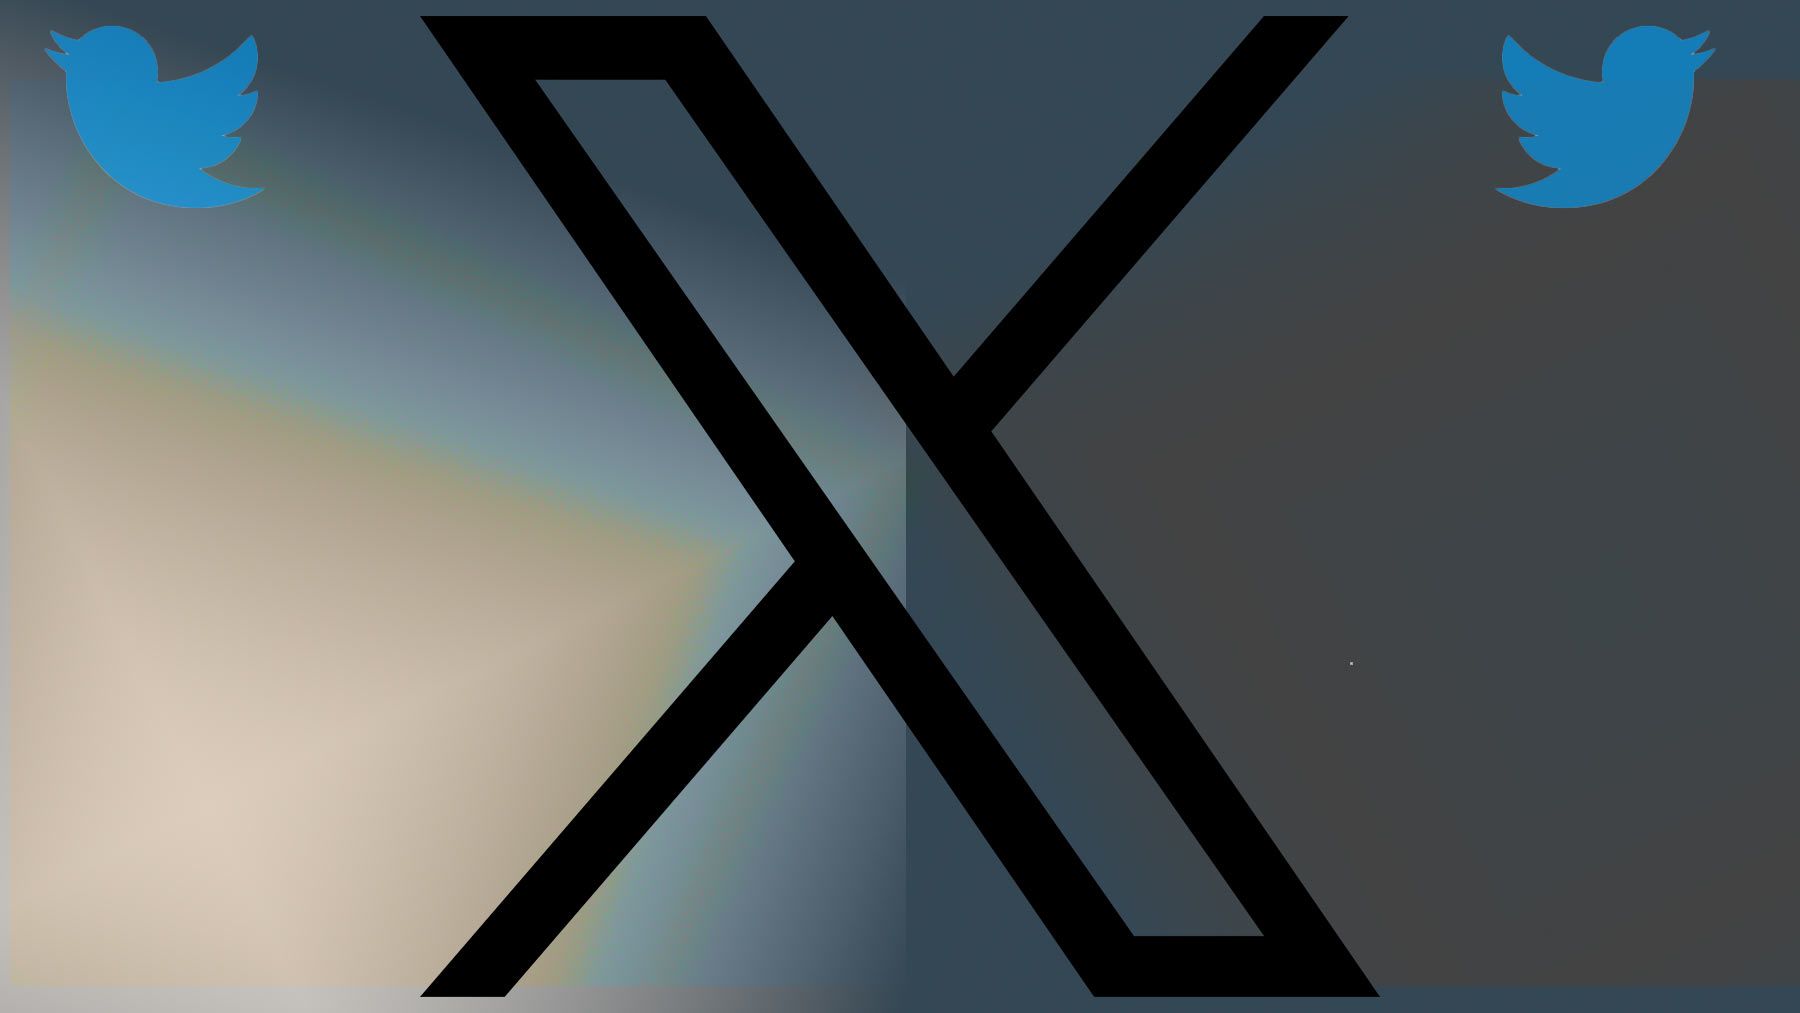 O logotipo X com dois logotipos de pássaros do Twitter contra um fundo multicolorido.